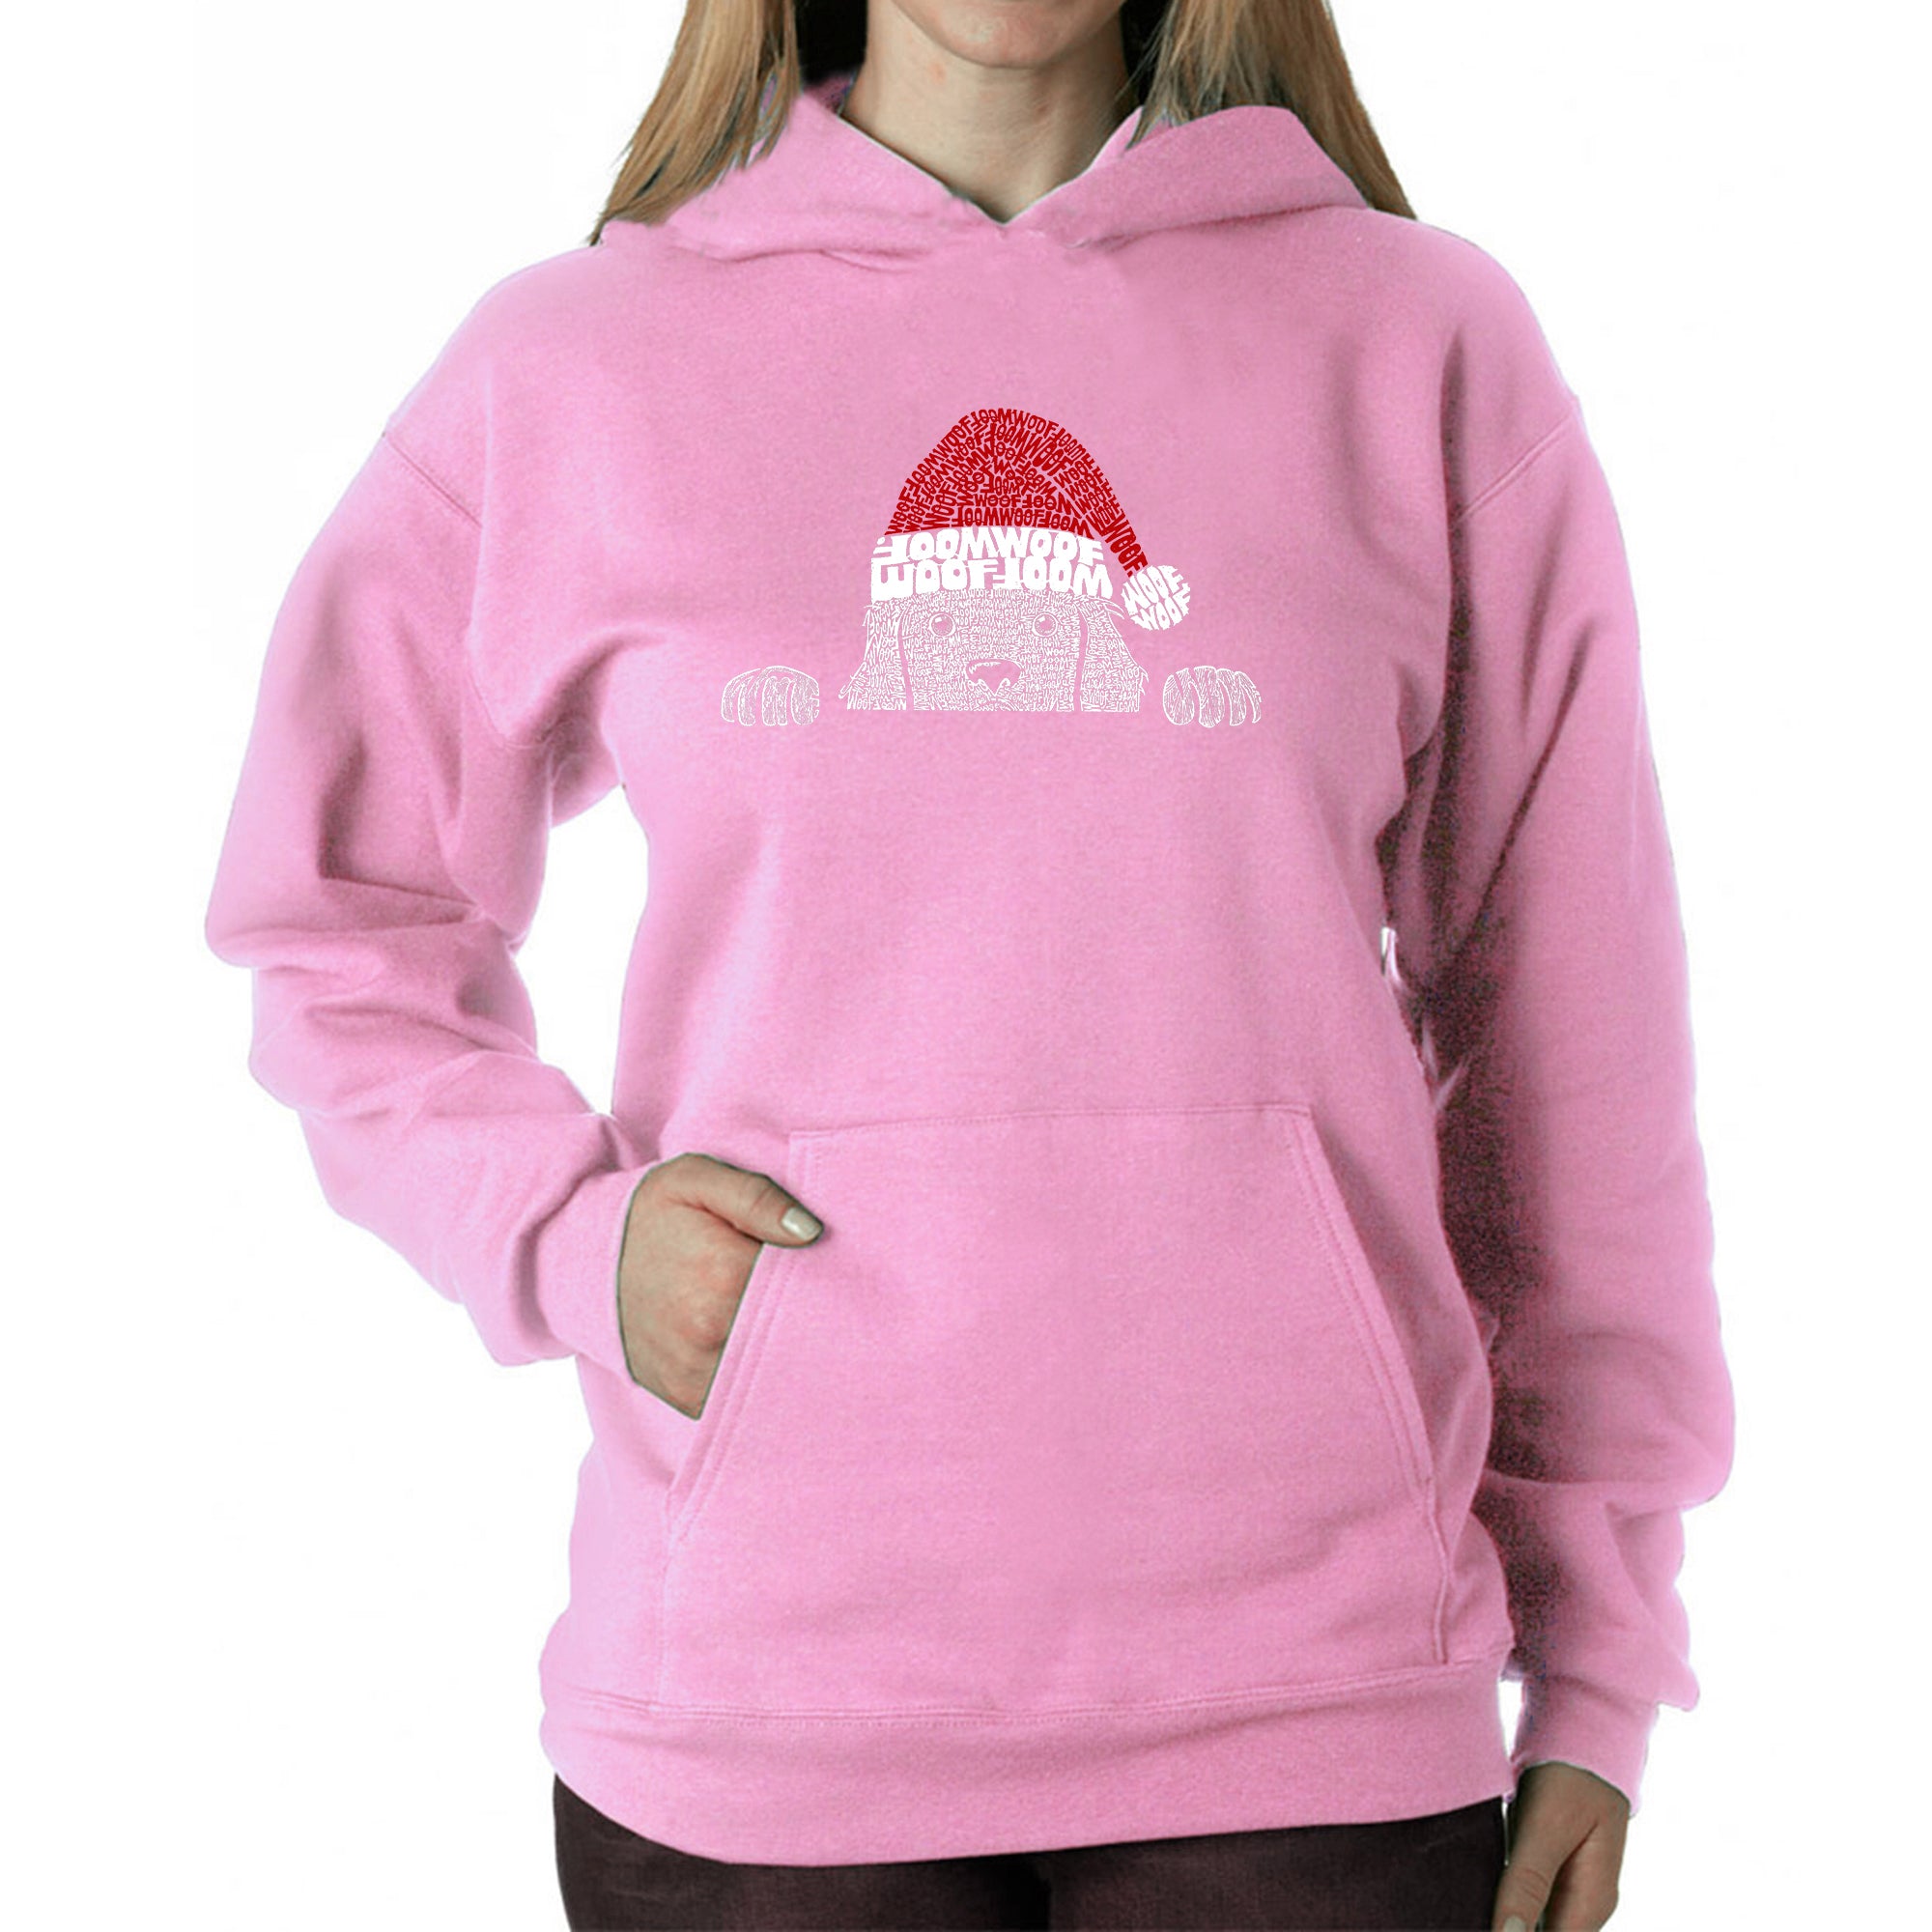 Christmas Peeking Dog - Women's Word Art Hooded Sweatshirt - Pink - Small